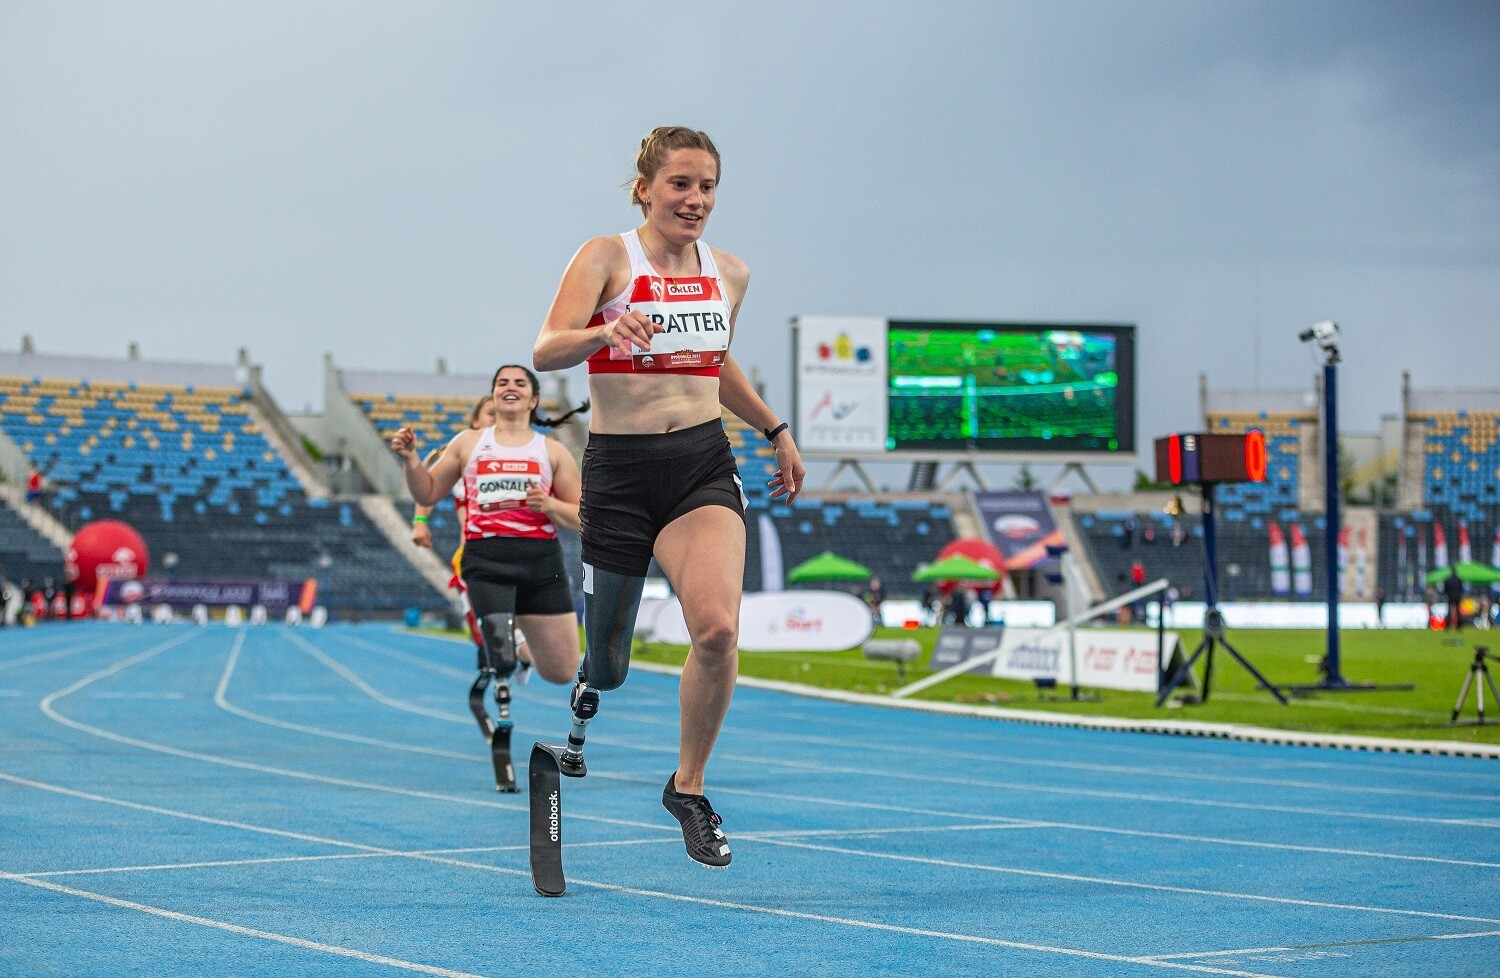 La jeune athlète Elena Kratter court sur une piste avec une prothèse de jambe.